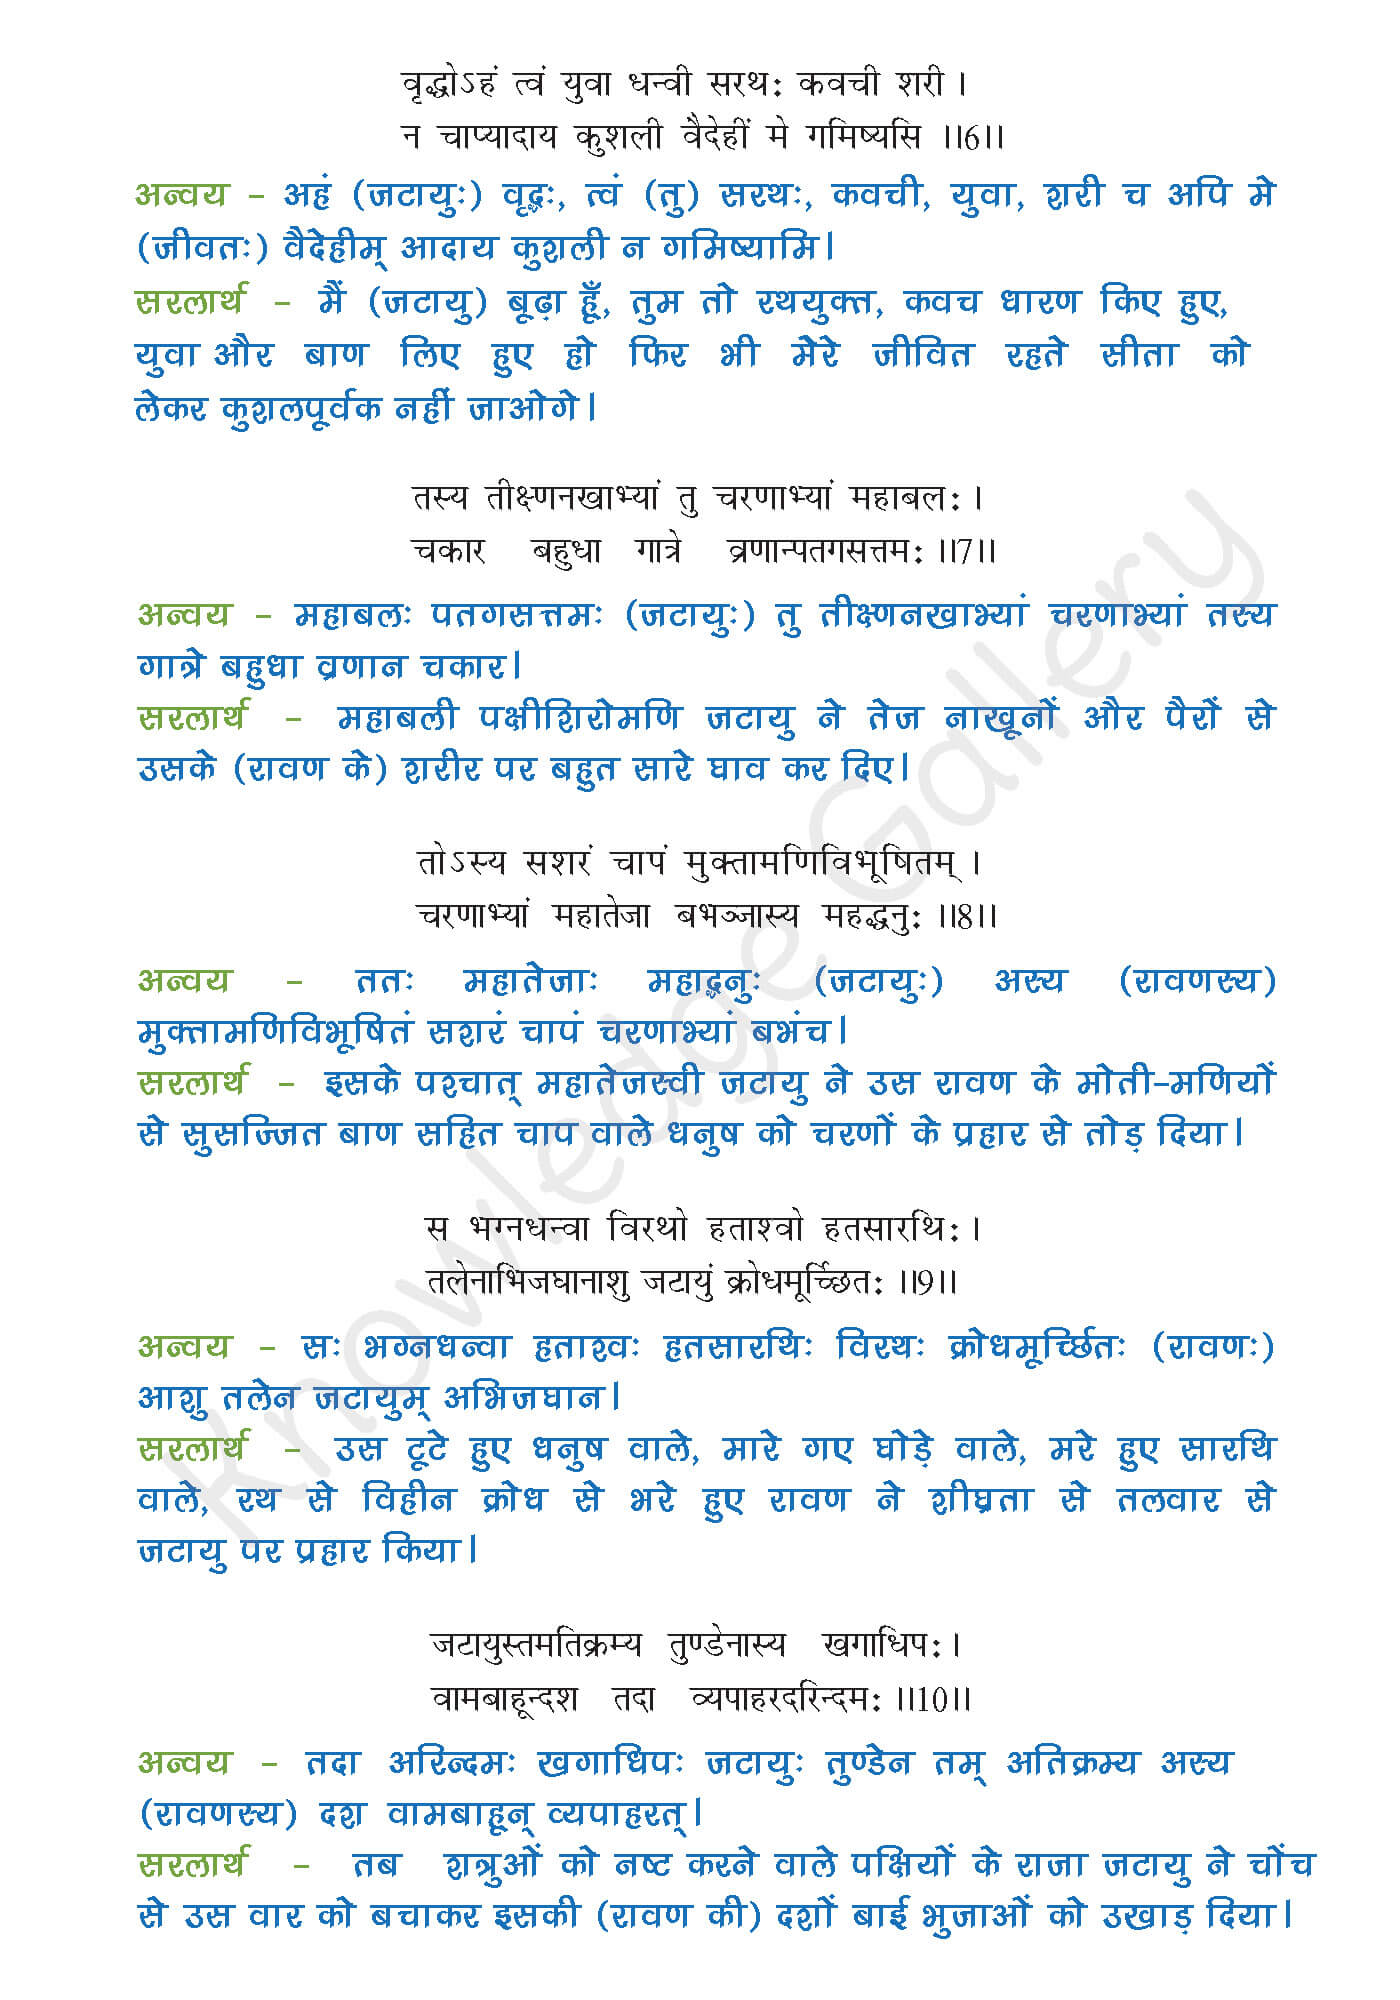 NCERT Solution For Class 9 Sanskrit Chapter 8 part 3